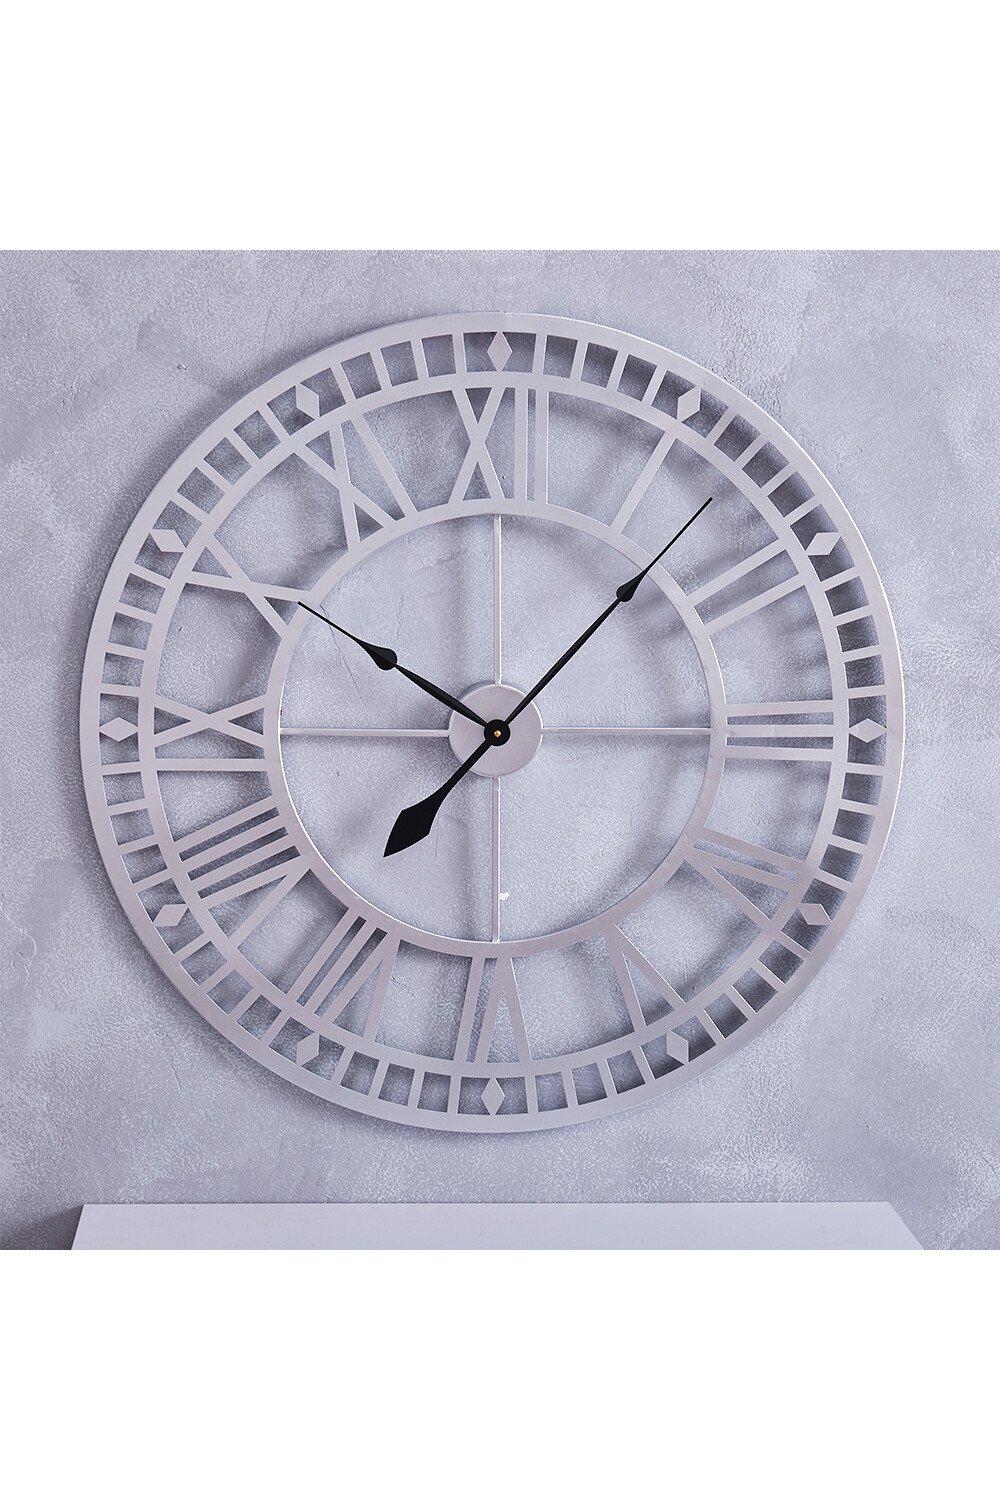 D80Cm Byrle Silent Wall Clock